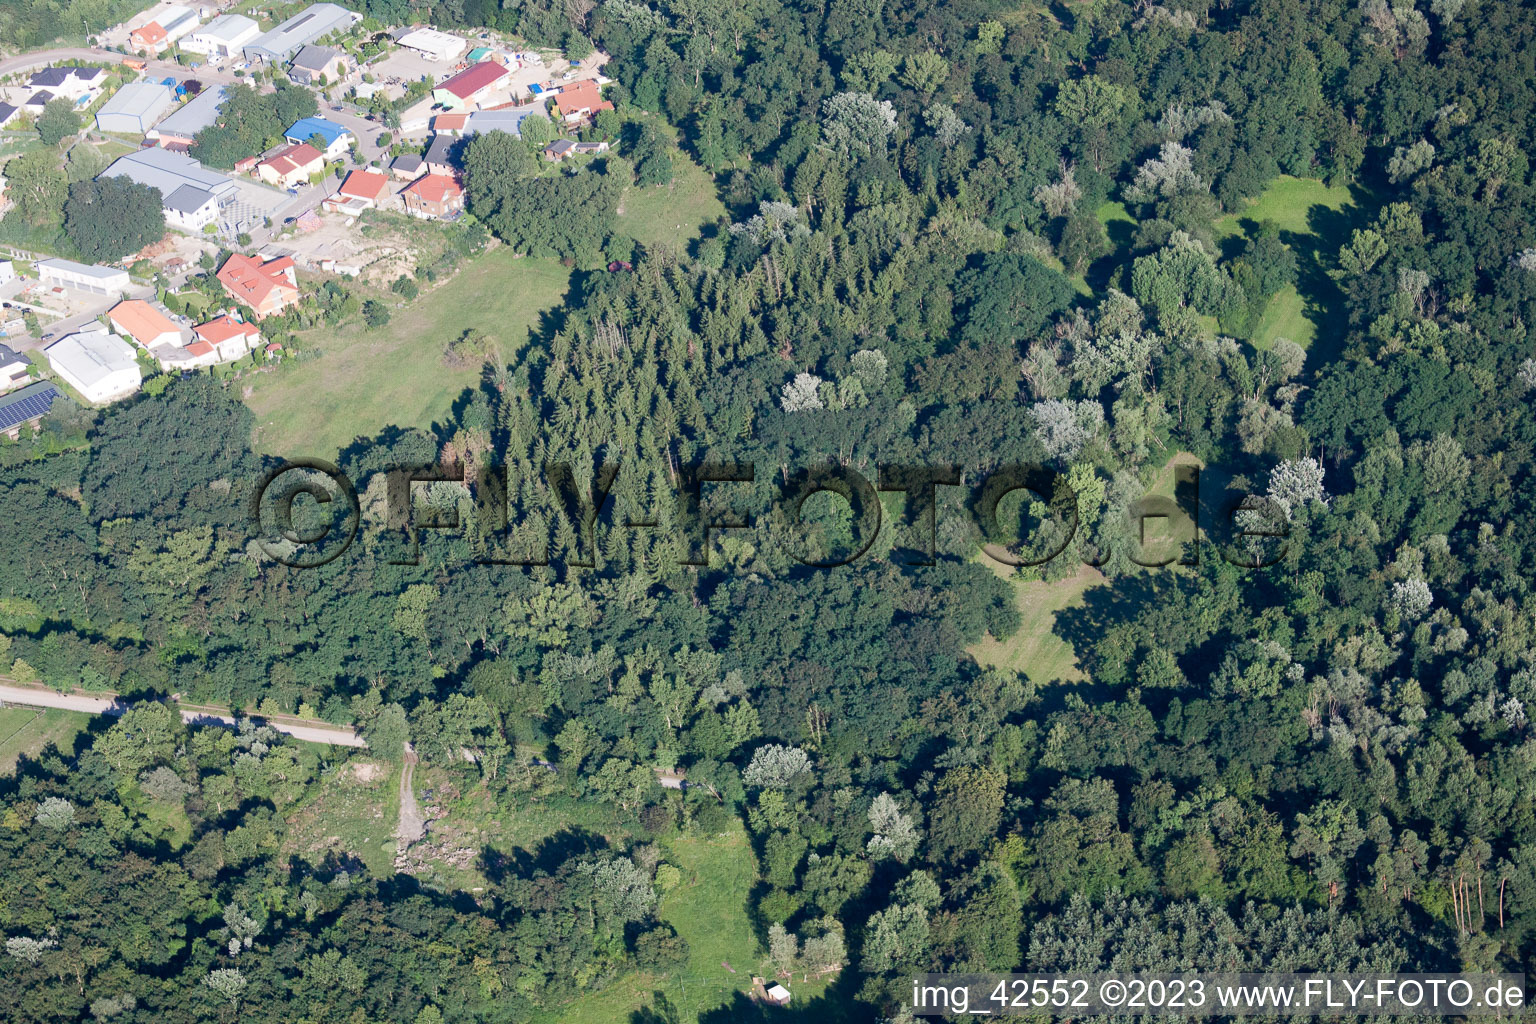 Jockgrim, Tongrube im Bundesland Rheinland-Pfalz, Deutschland aus der Luft betrachtet